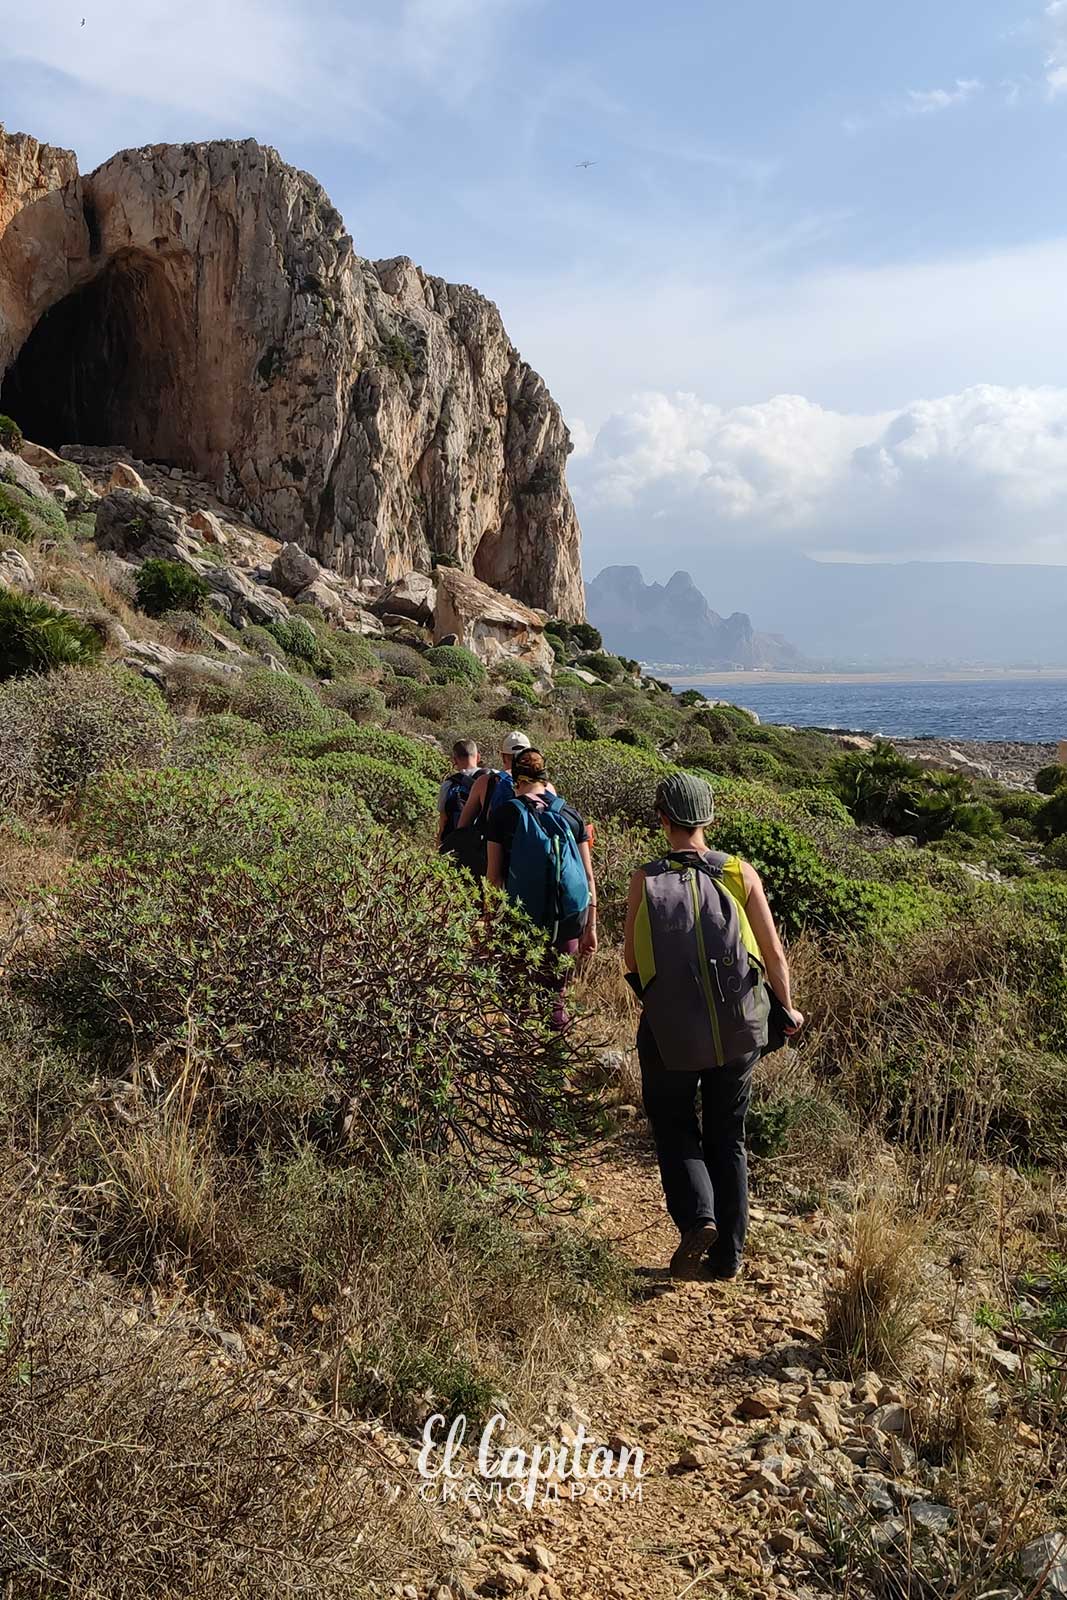 Скалолазание на Сицилии 2019 - выезд на скалы